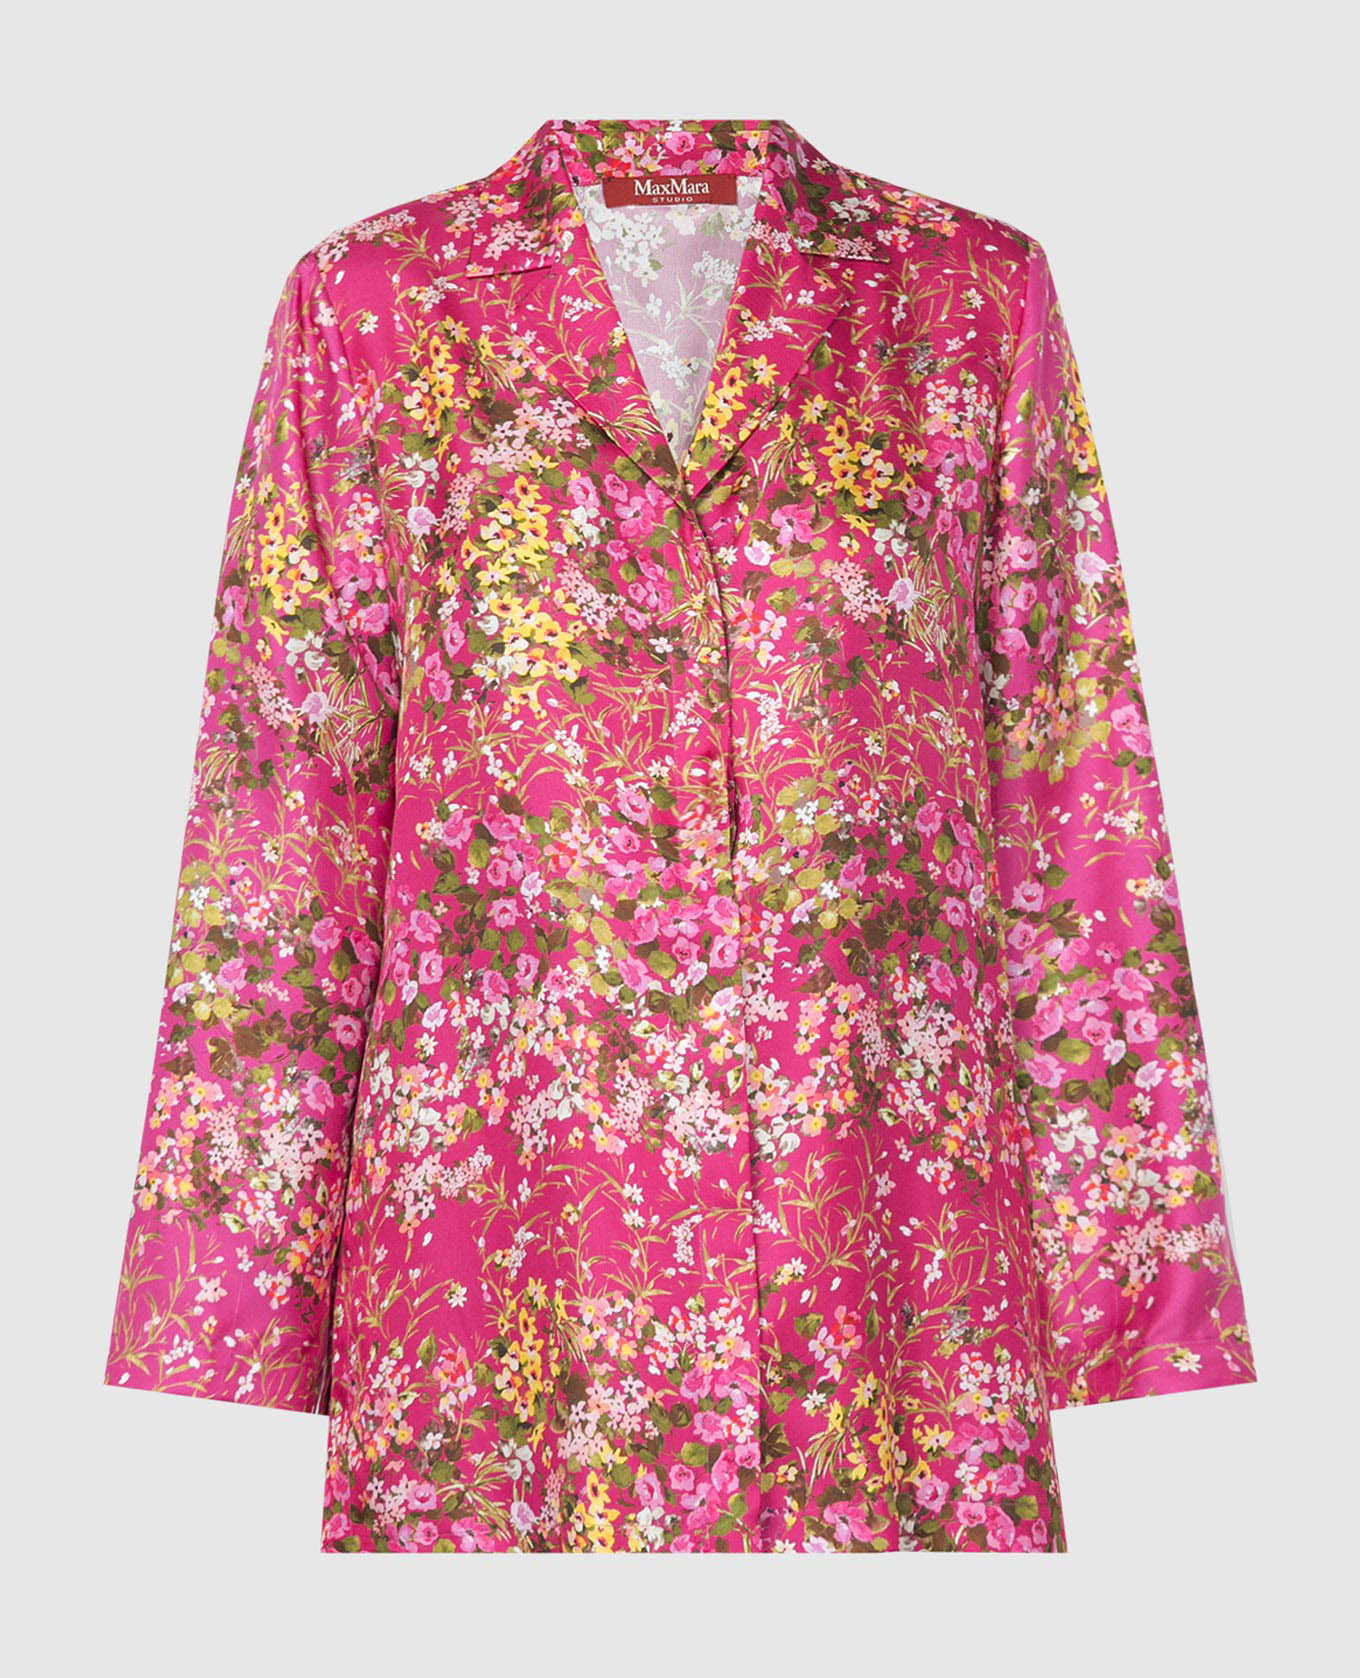 Розовая блуза Campale из шелка в цветочный принт.